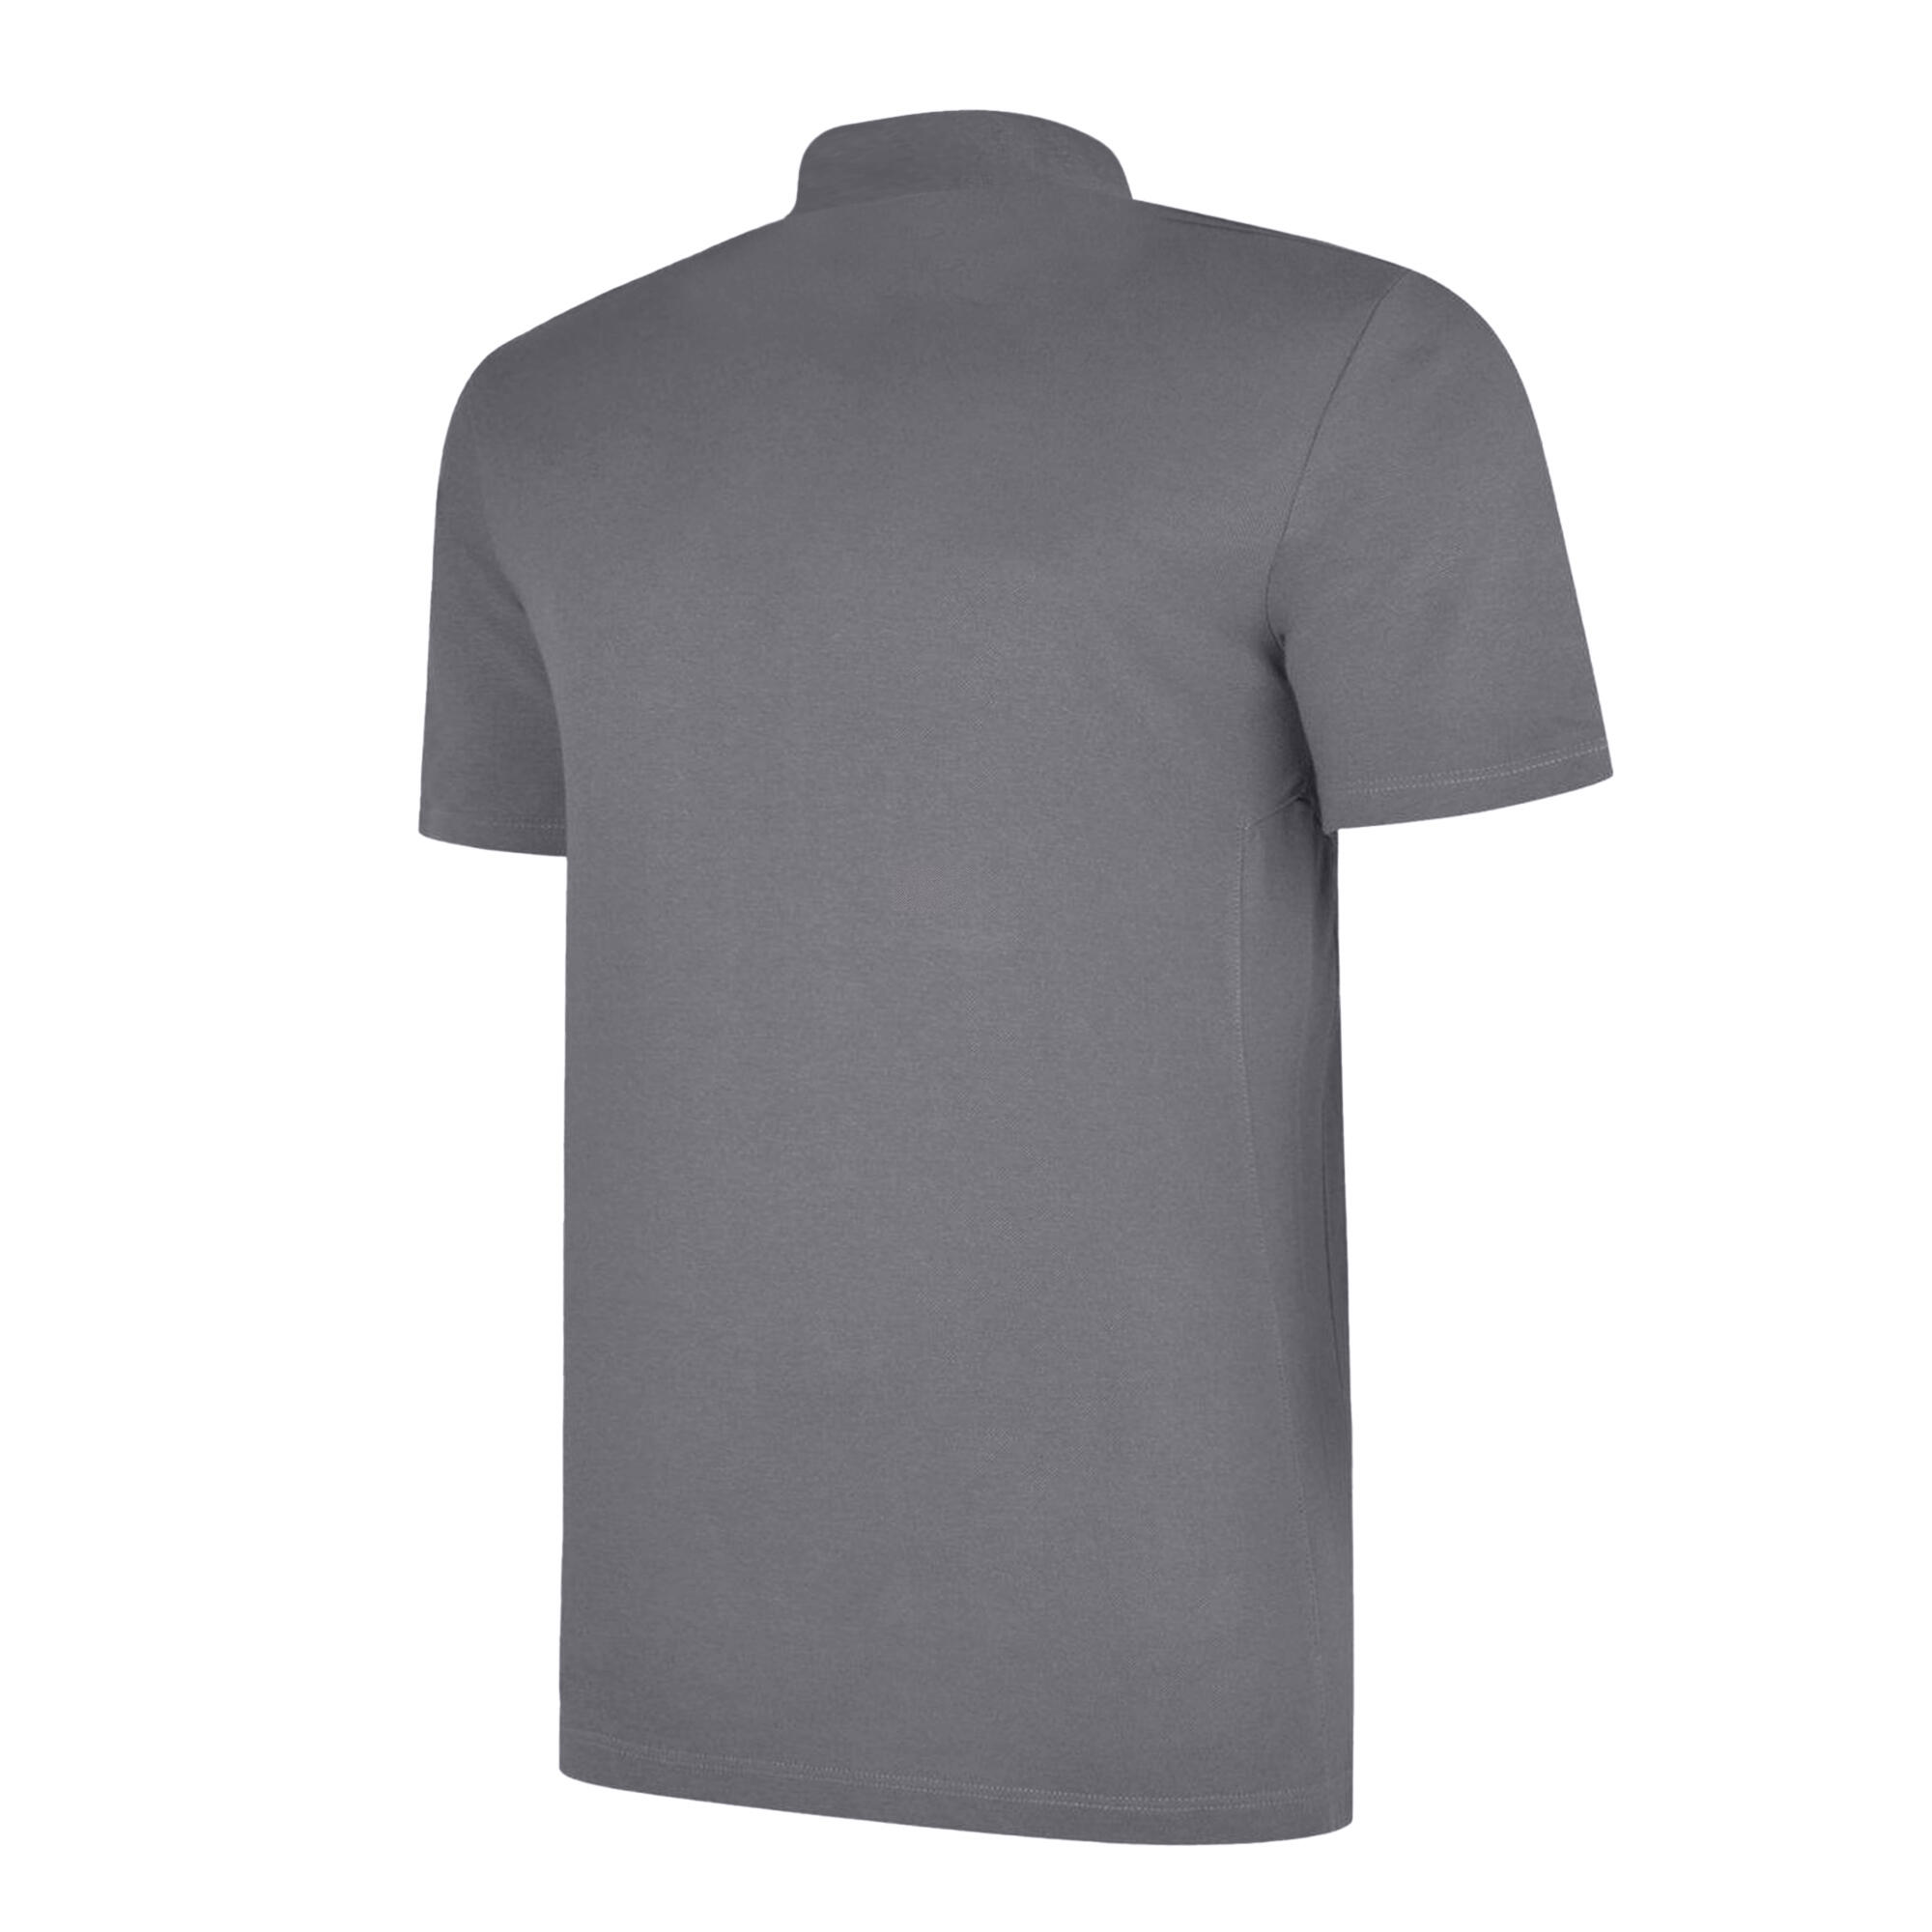 UMBRO Mens Essential Polo Shirt (Dark Navy/White)